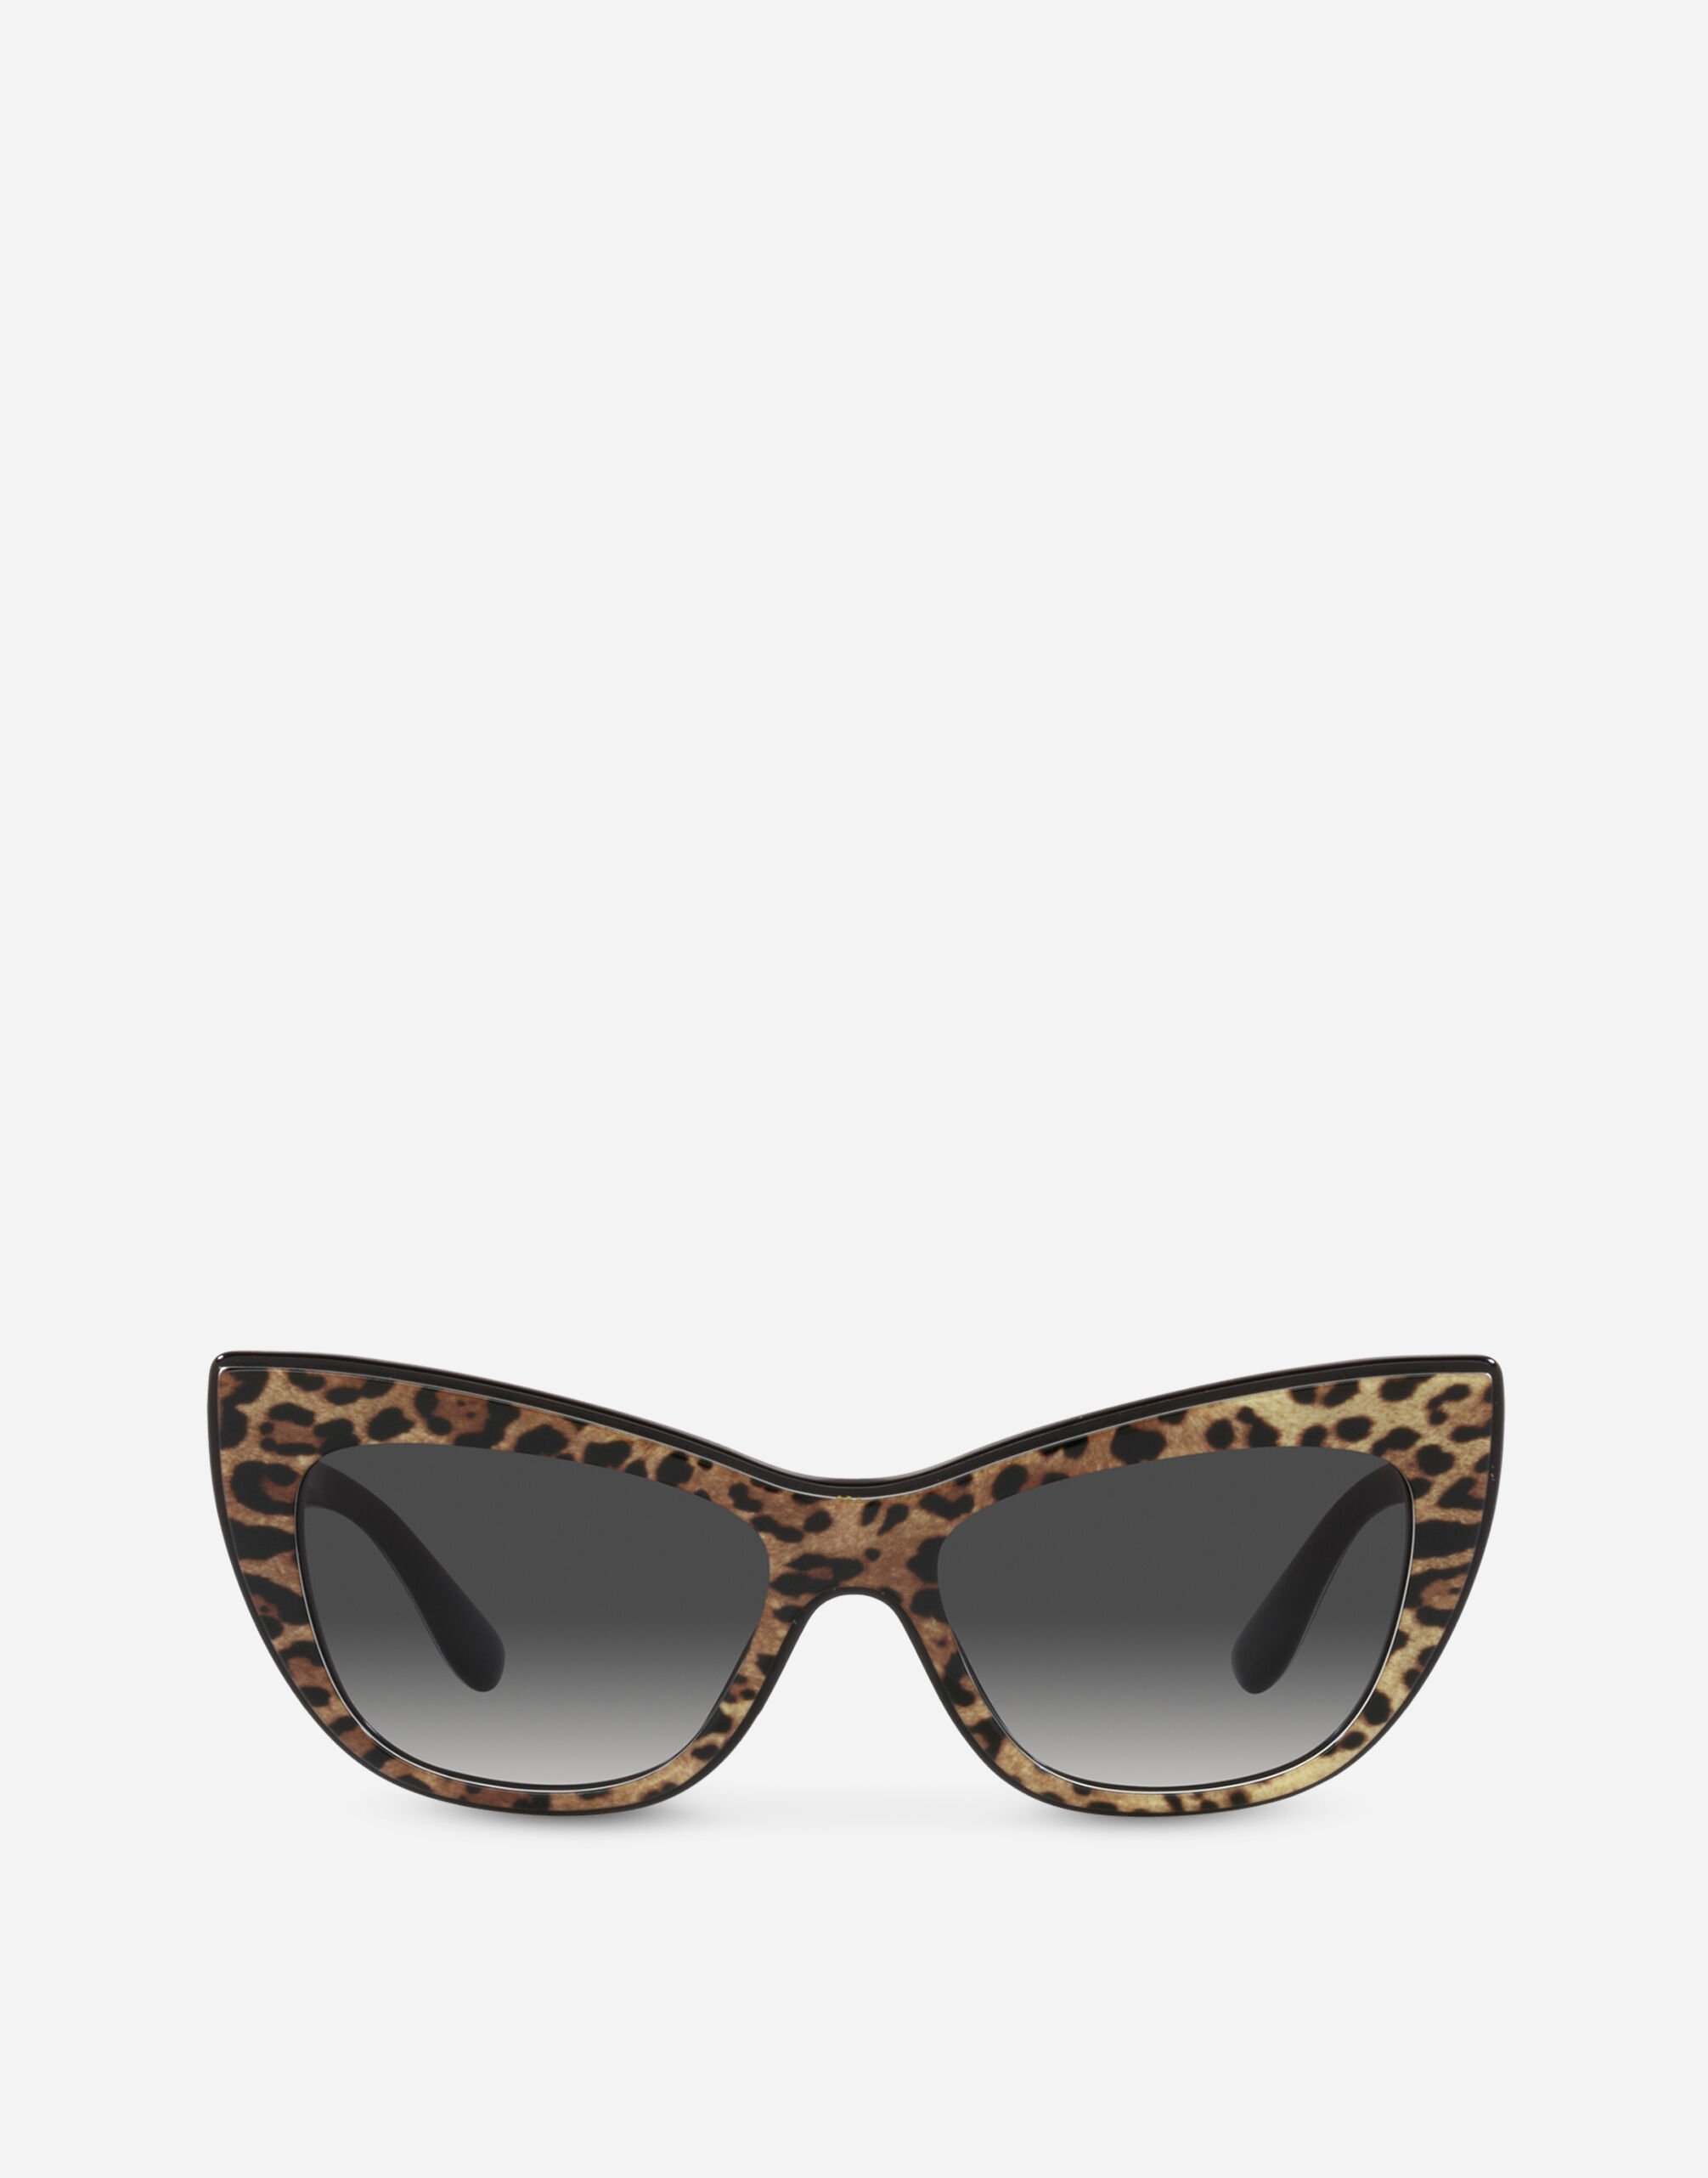 Dolce & Gabbana New print sunglasses Black VG4439VP187